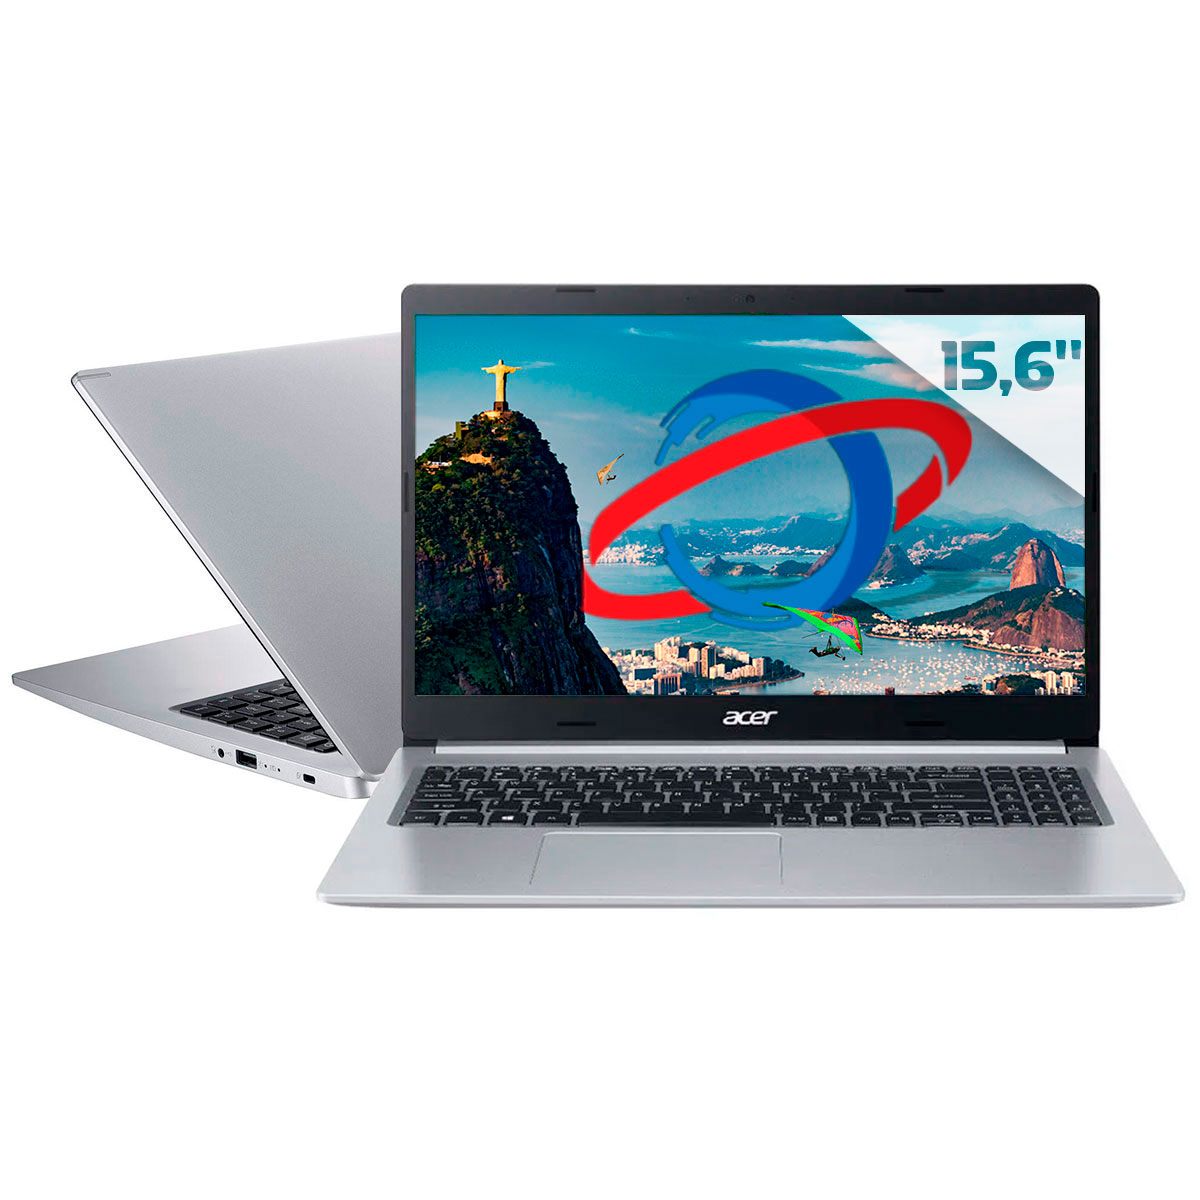 Notebook Acer Aspire A515-54-57EN - Intel i5 1035G1, RAM 8GB, SSD 256GB + HD 1TB, Tela 15.6